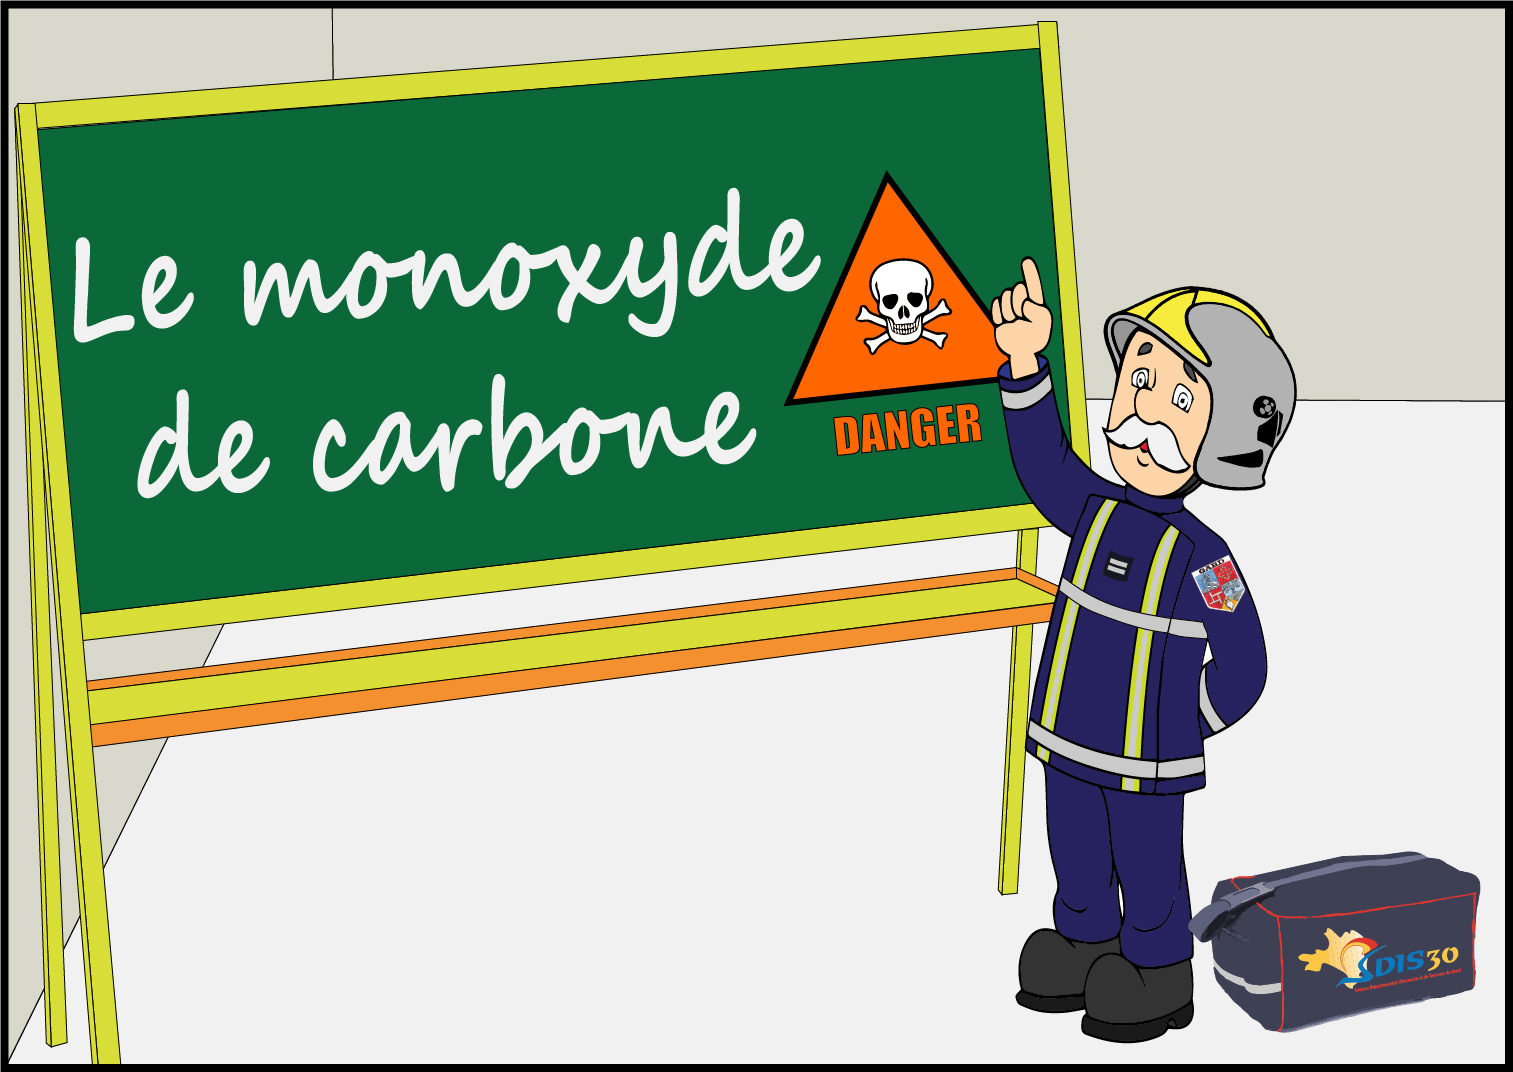 Monoxyde de carbone